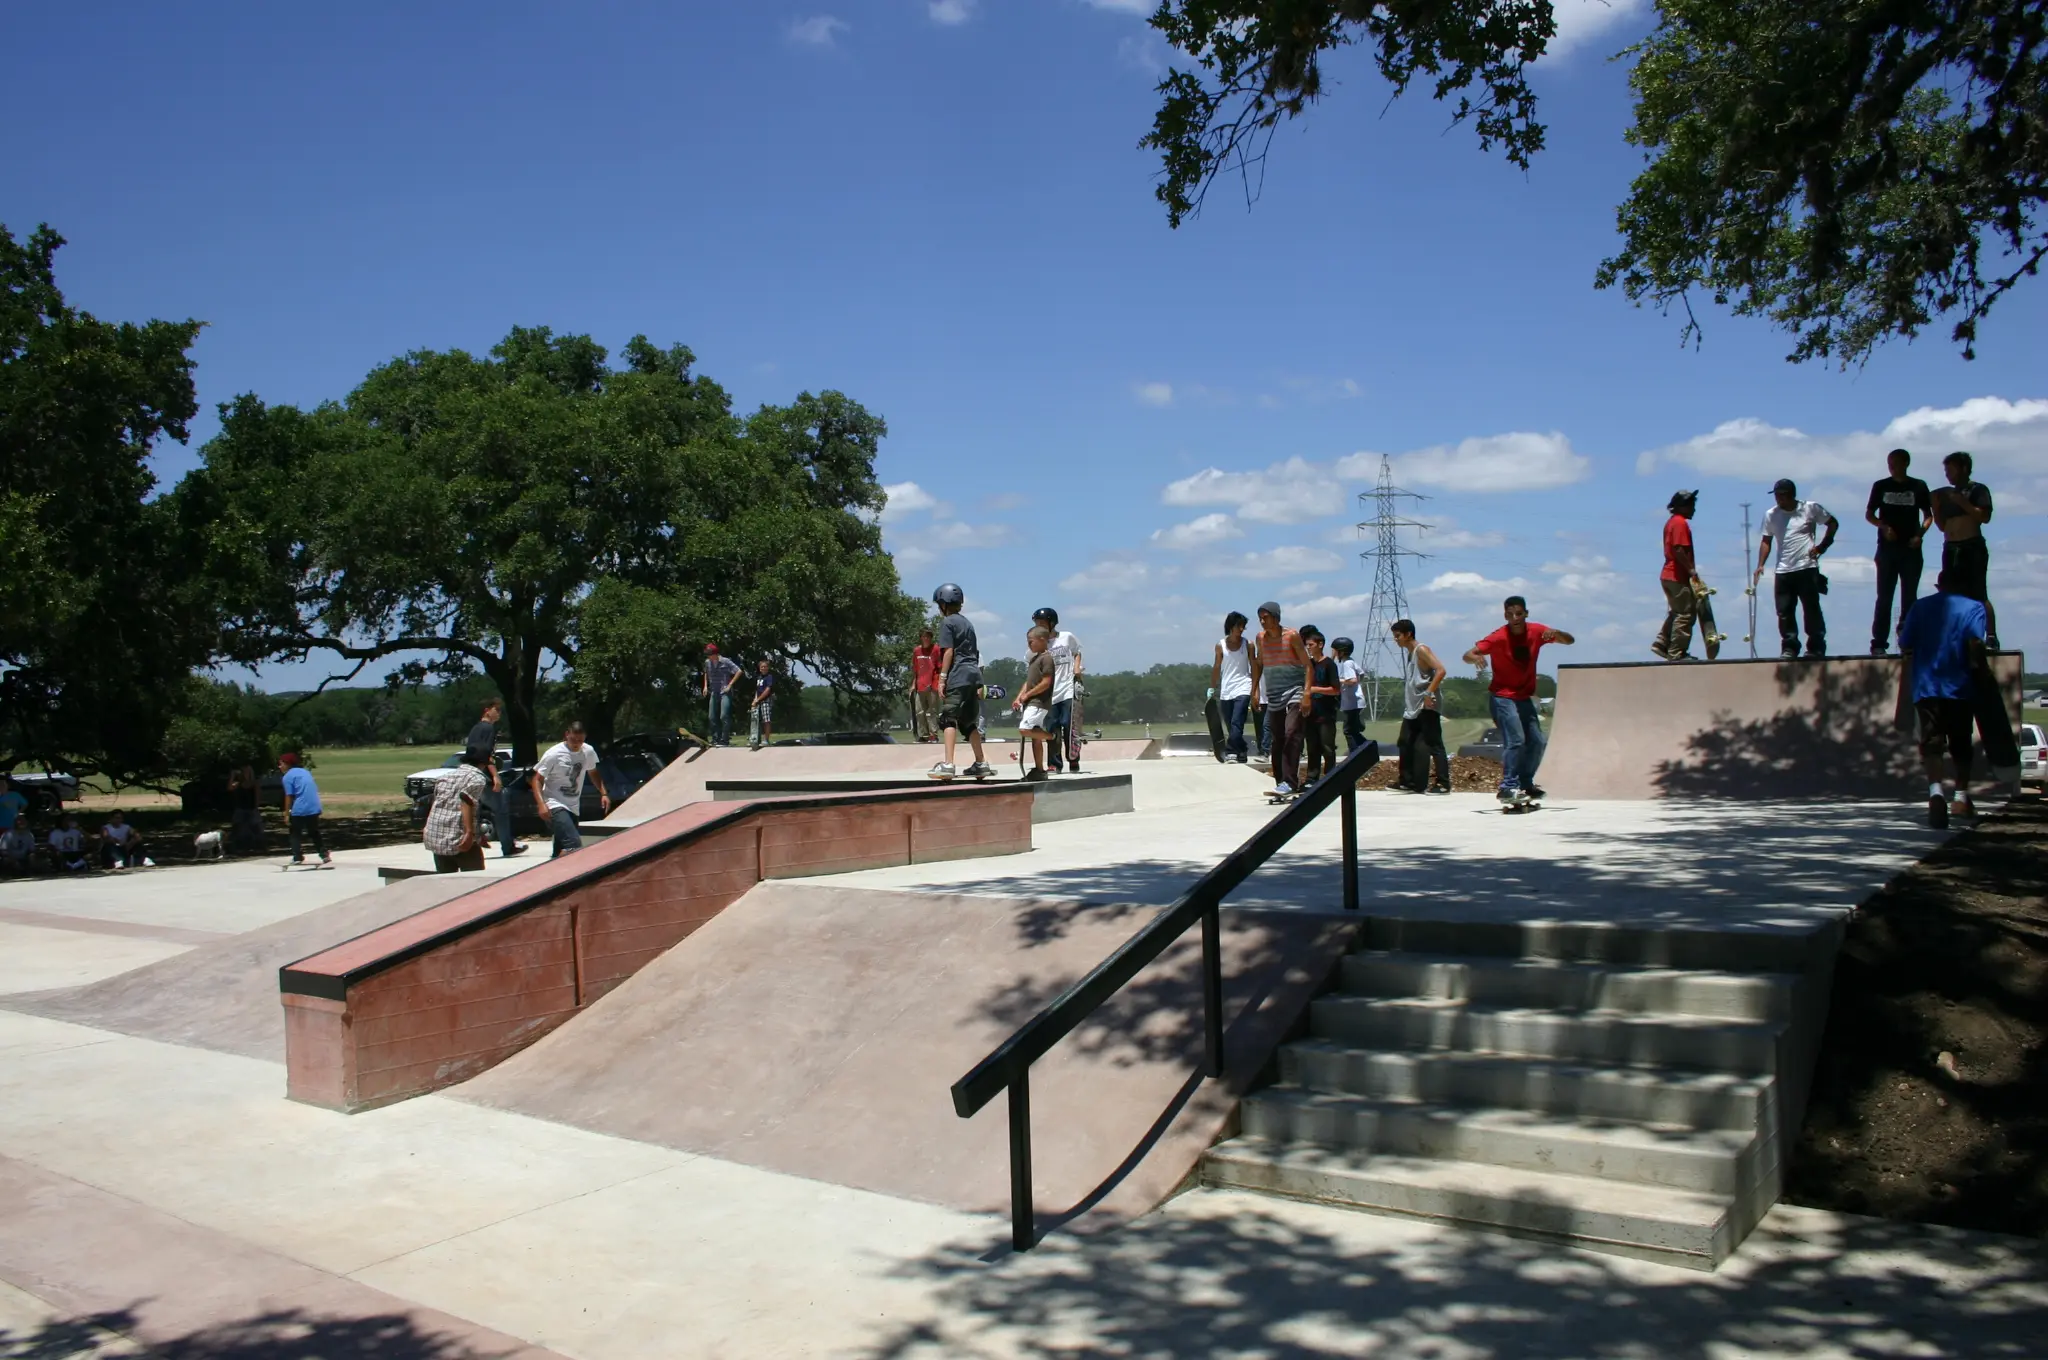 Boerne Texas Skatepark